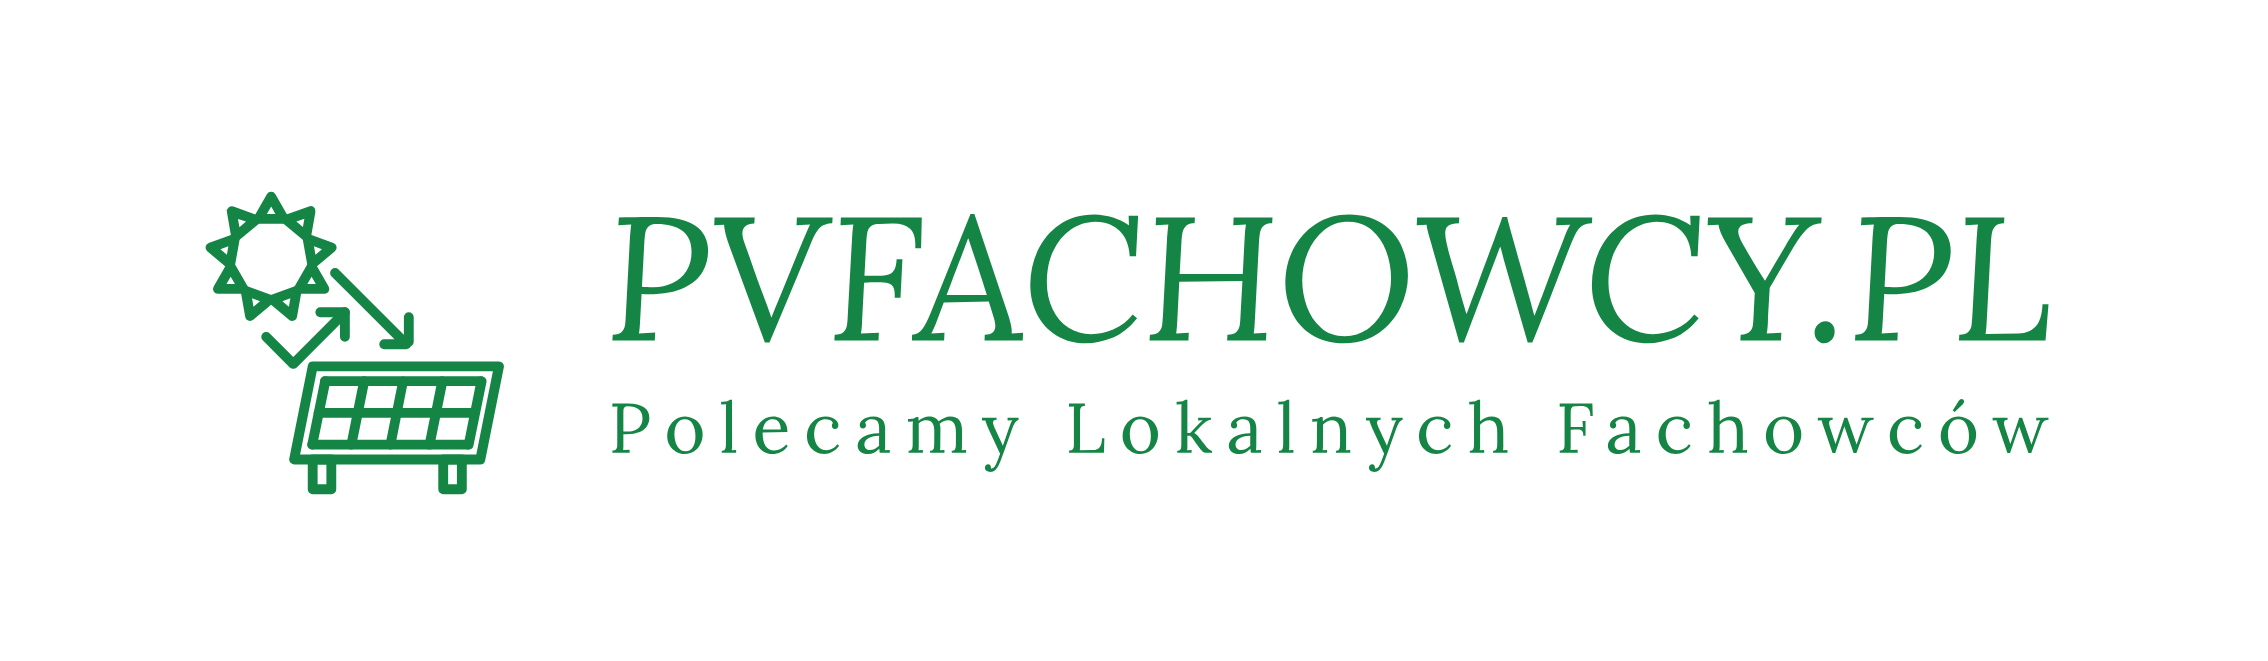 Logo PVFACHOWCY: Wizualna reprezentacja zaangażowania w innowacje i jakość w fotowoltaice.